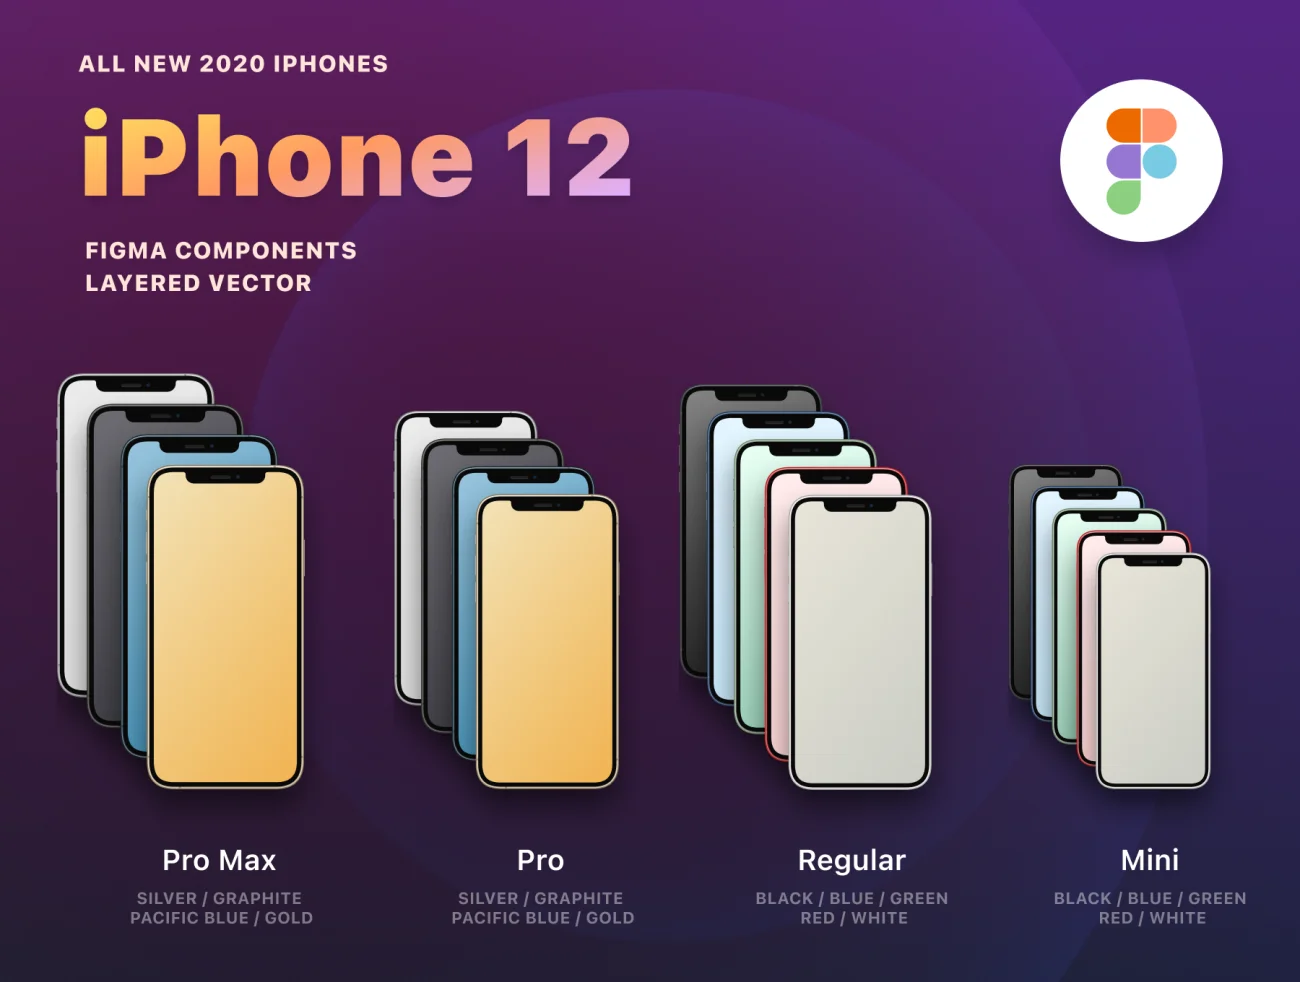 New iPhone 12 全系列sketch矢量智能样机组件库-产品展示、创意展示、实景样机、手机模型、样机、简约样机、苹果设备-到位啦UI